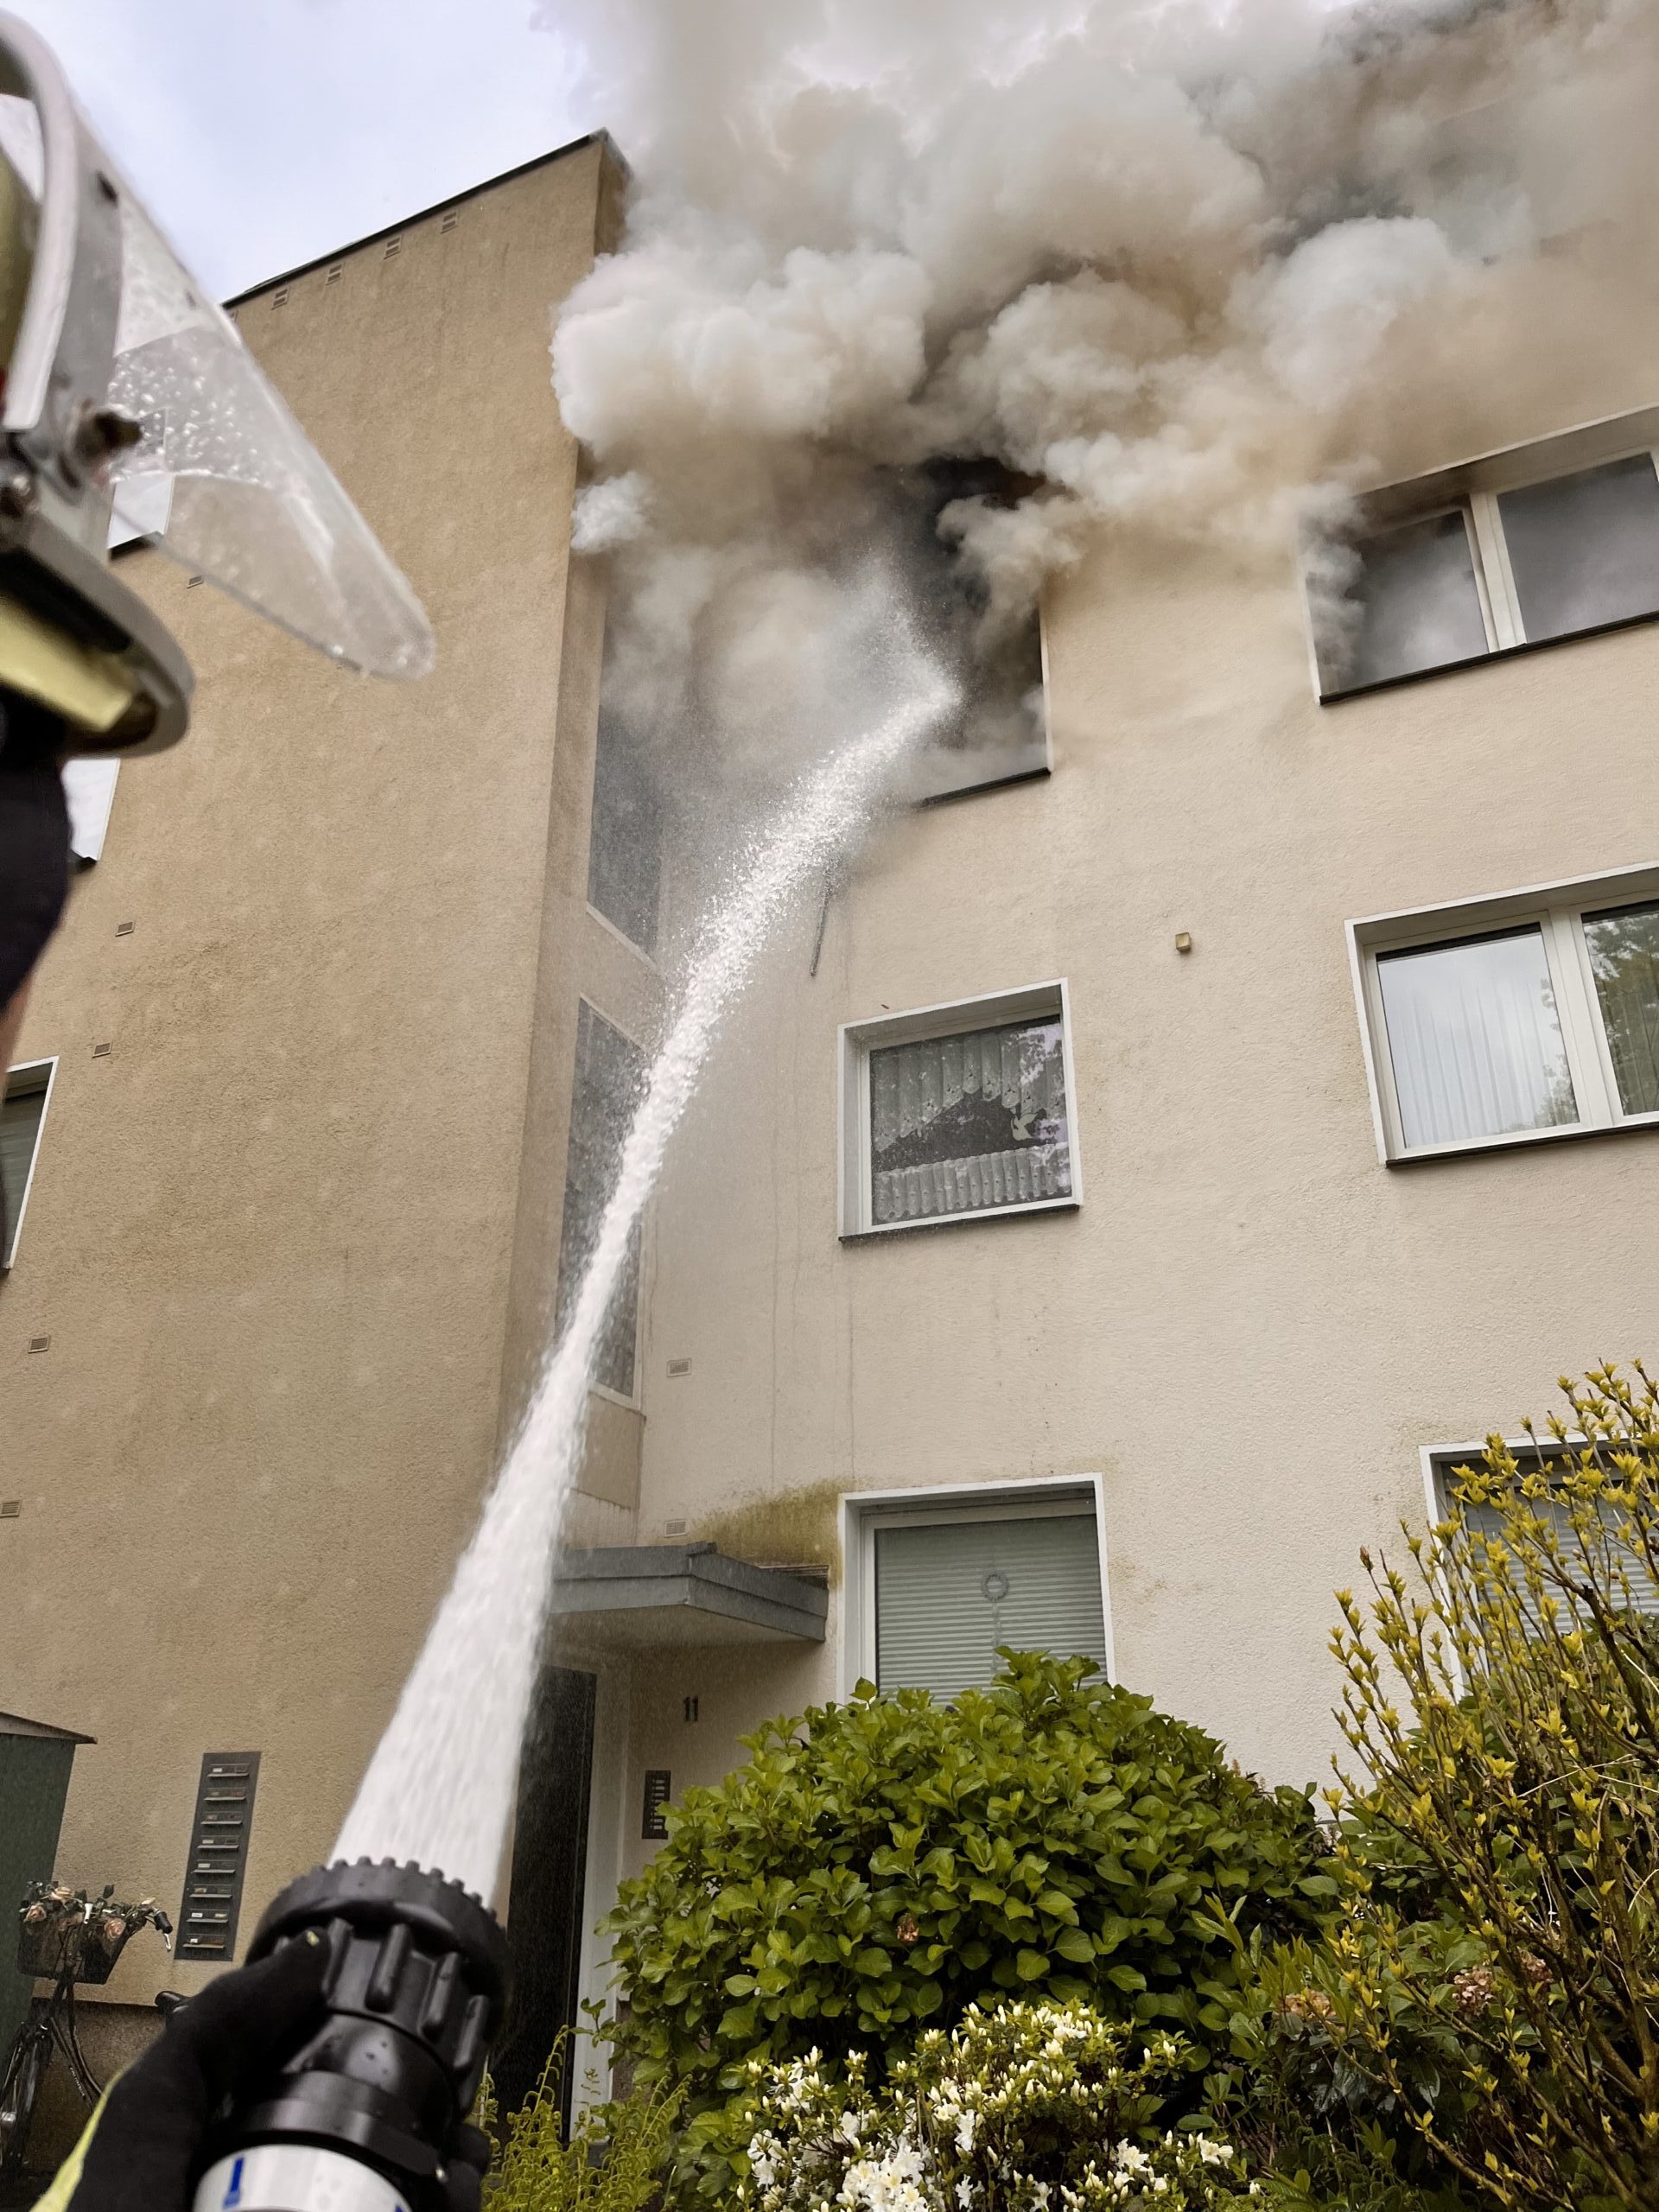 Gladbeck: Wohnungsbrand mit einer verstorbenen Person